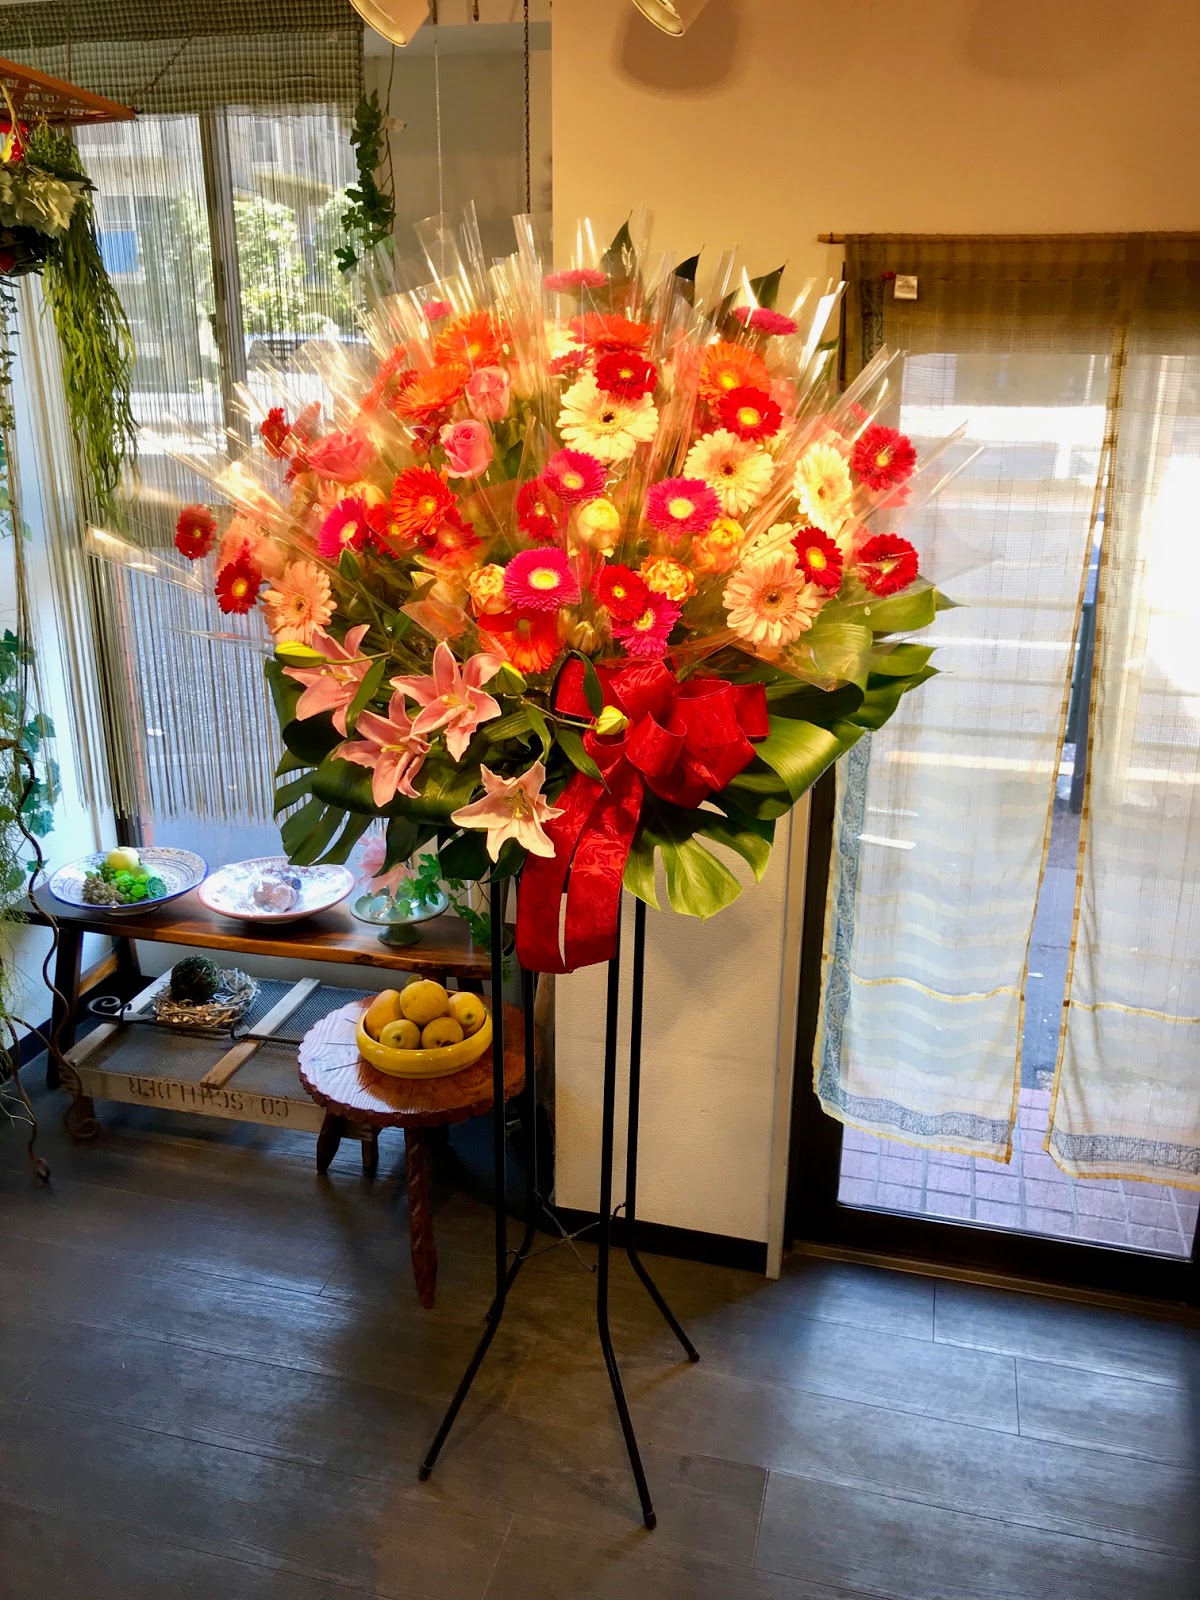 葉織 Haori Flowers 新宿区のお花屋さん ルーテル市ヶ谷センター 花束スタンド